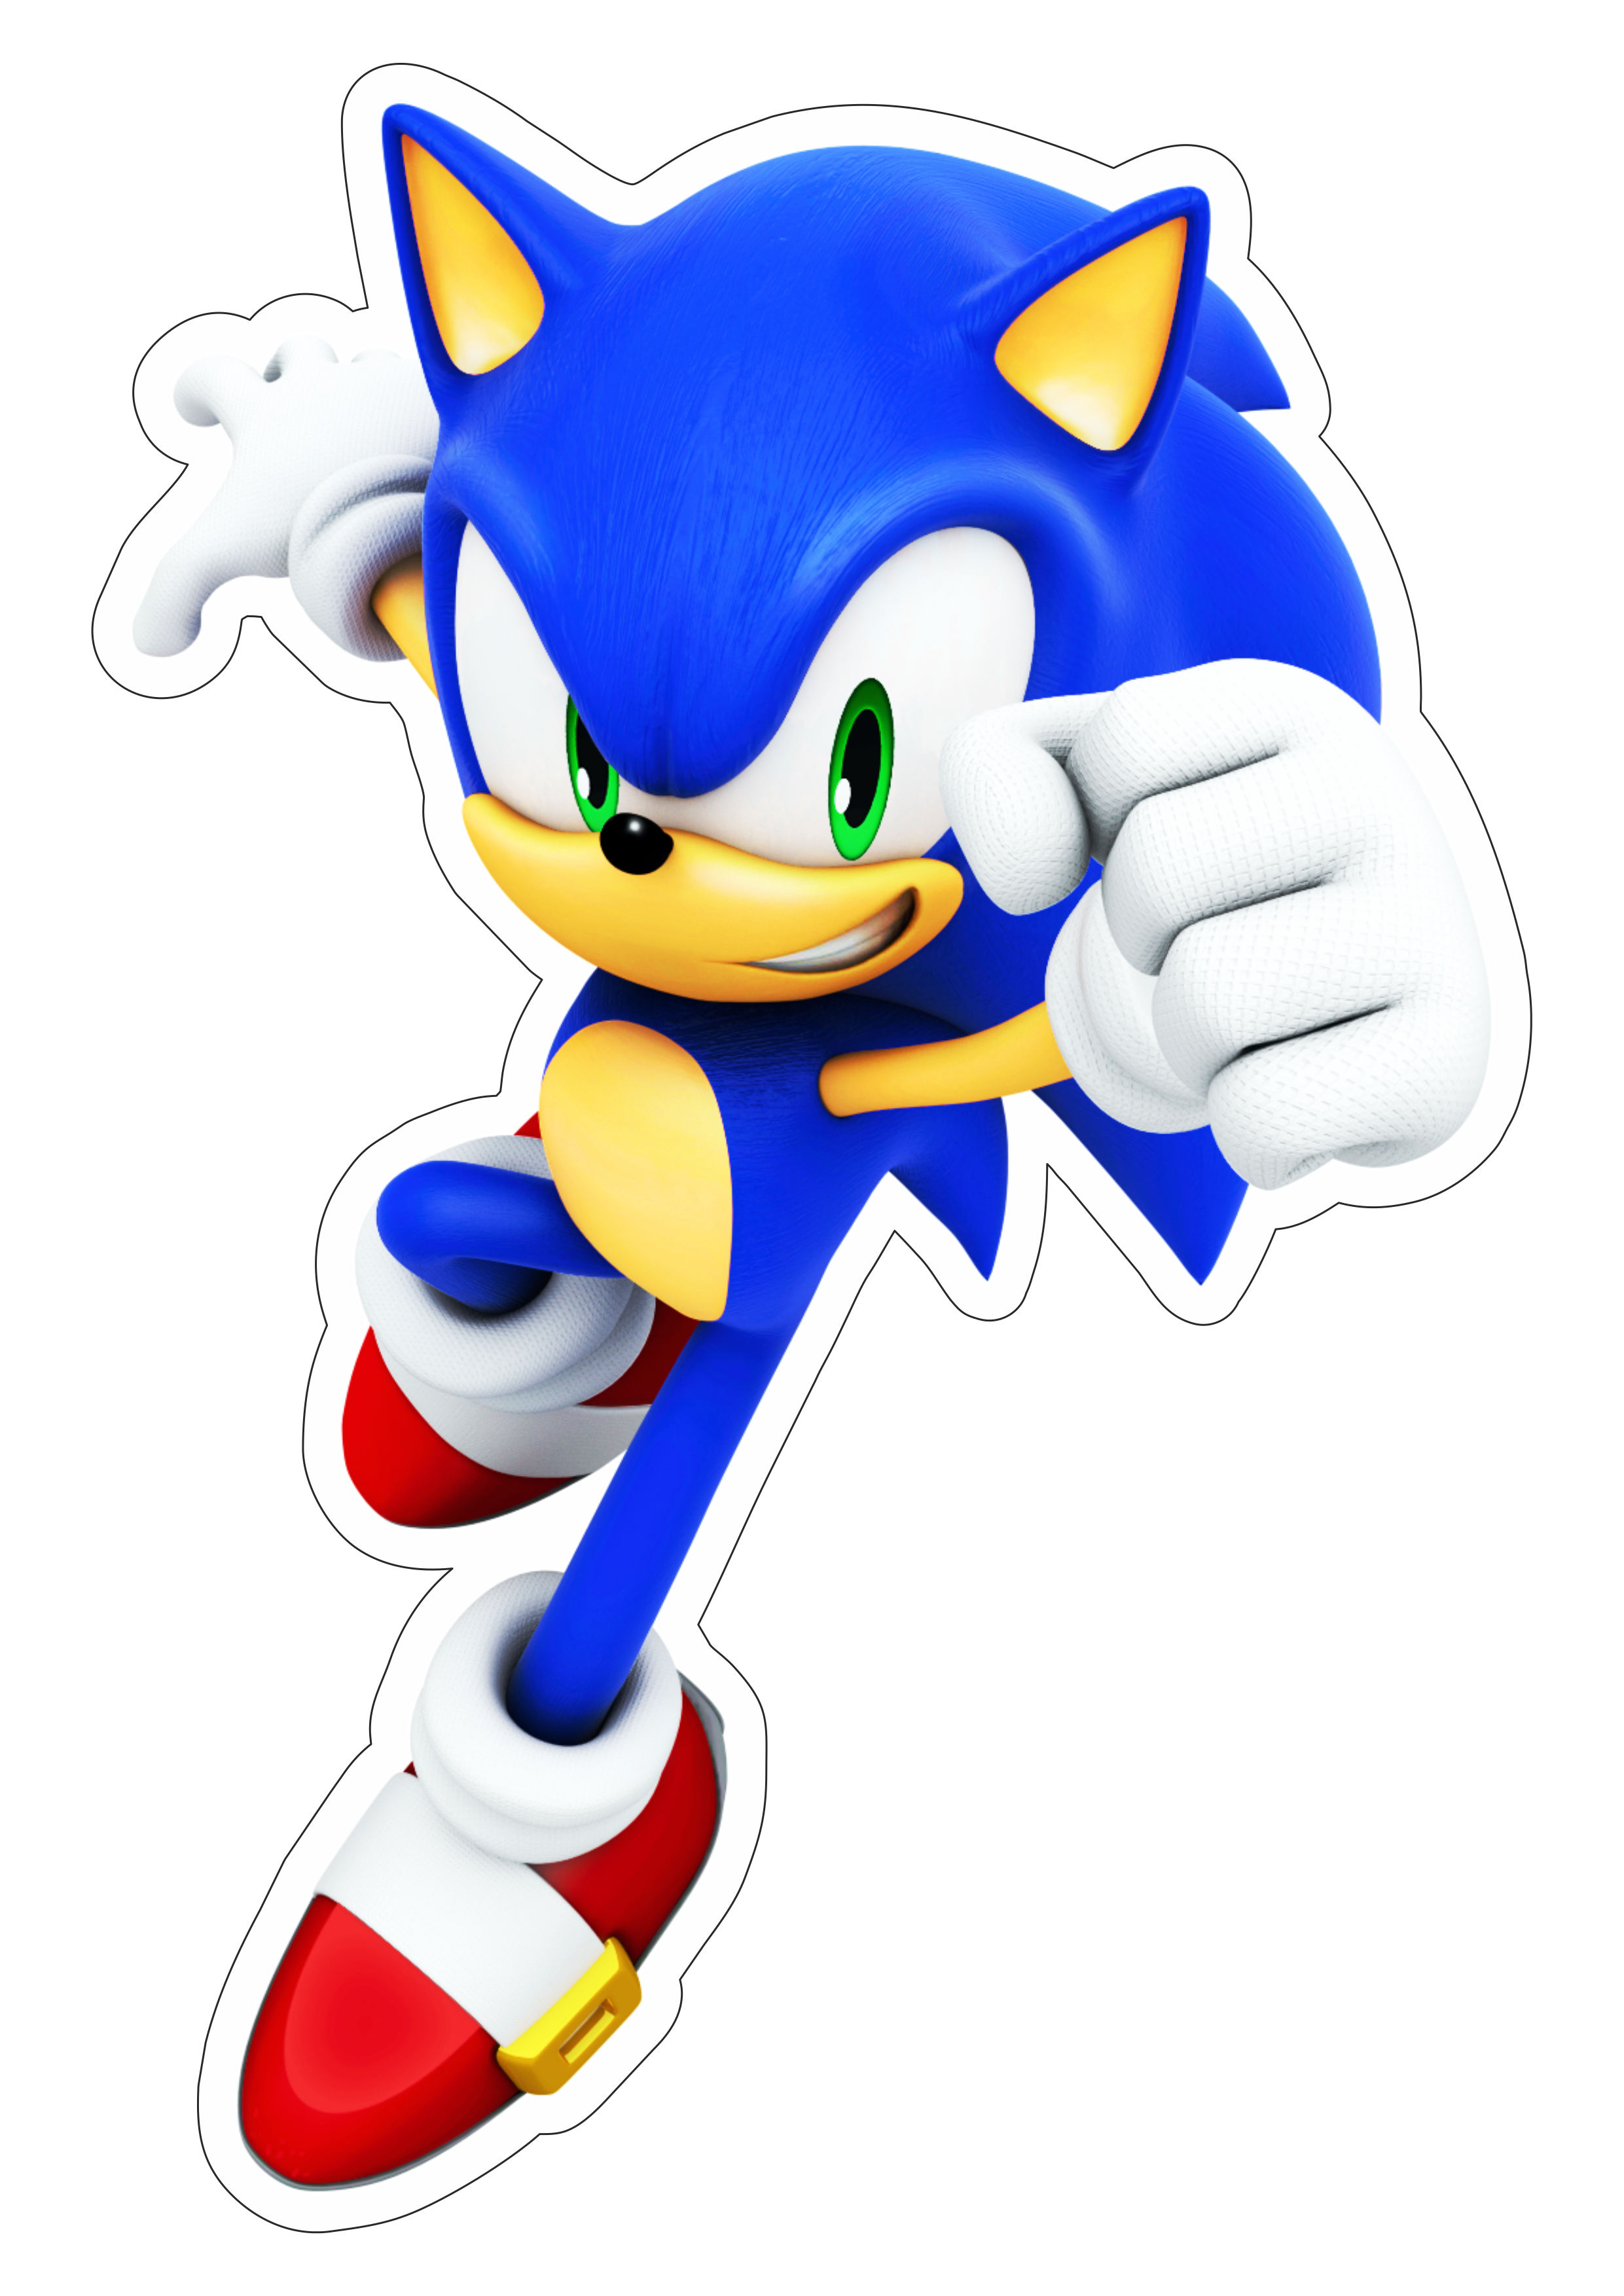 Sonic the hedgehog ouriço personagem de game aventura infantil desenho para artes gráficas animação ilustração png